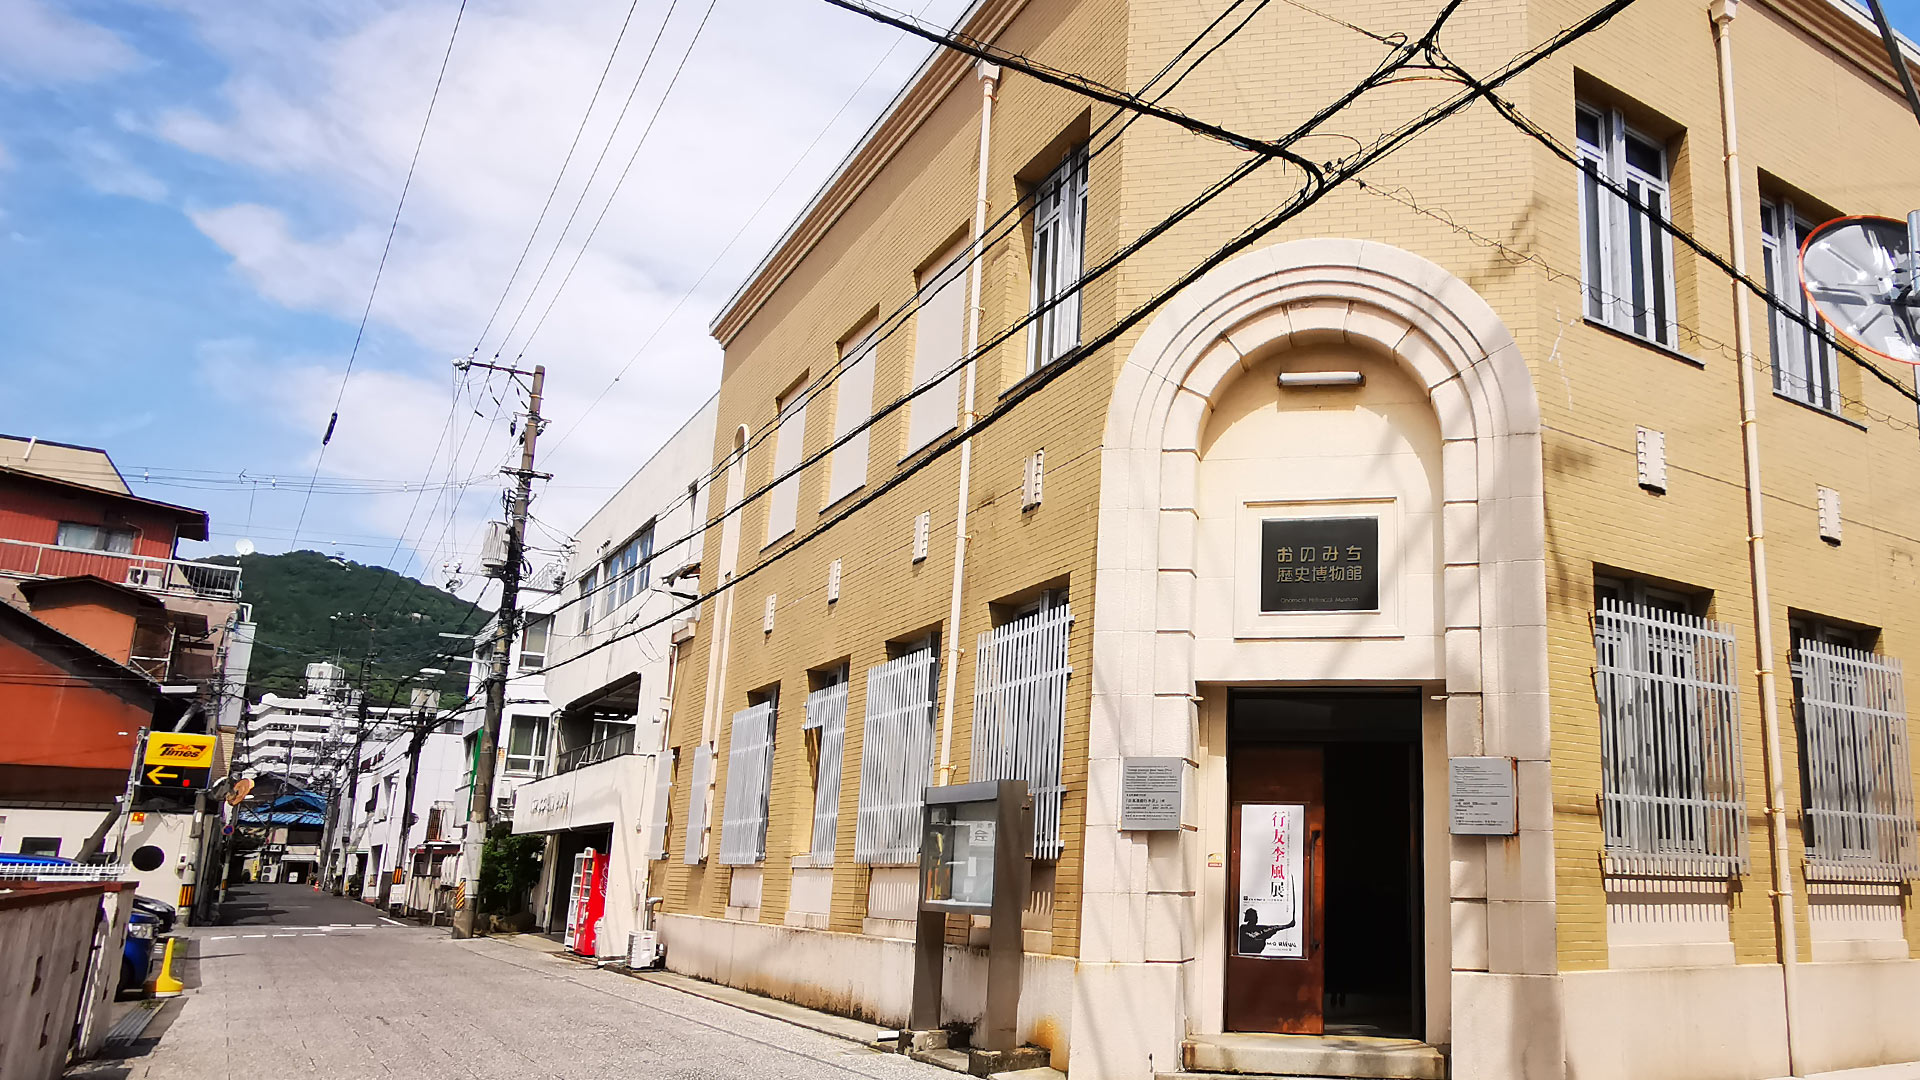 おのみち歴史博物館(おのみちれきしはくぶつかん) Onomichi Historical Museum